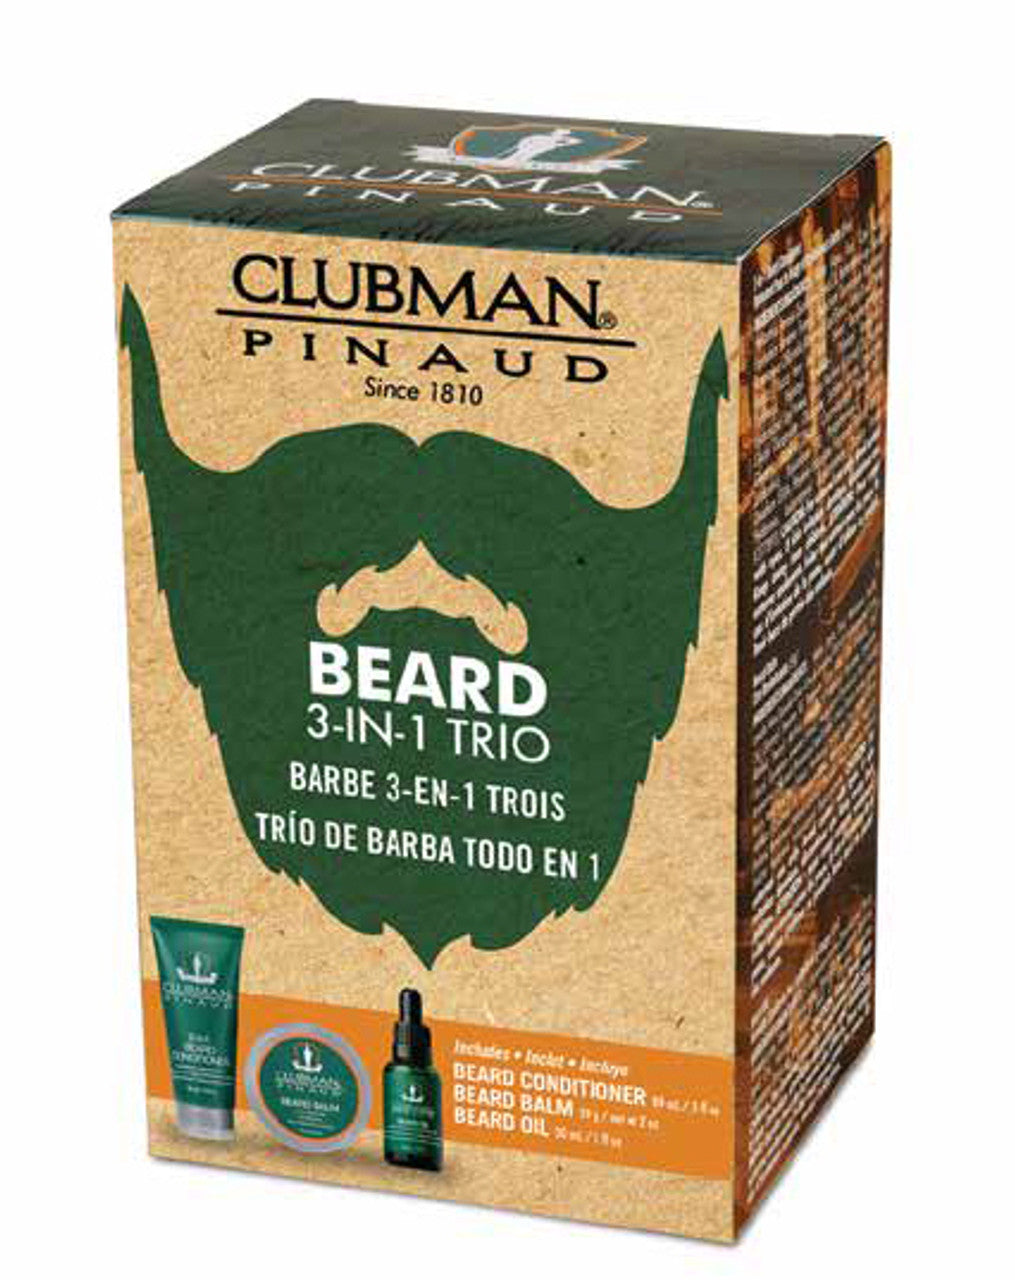 Clubman-Beard Trio